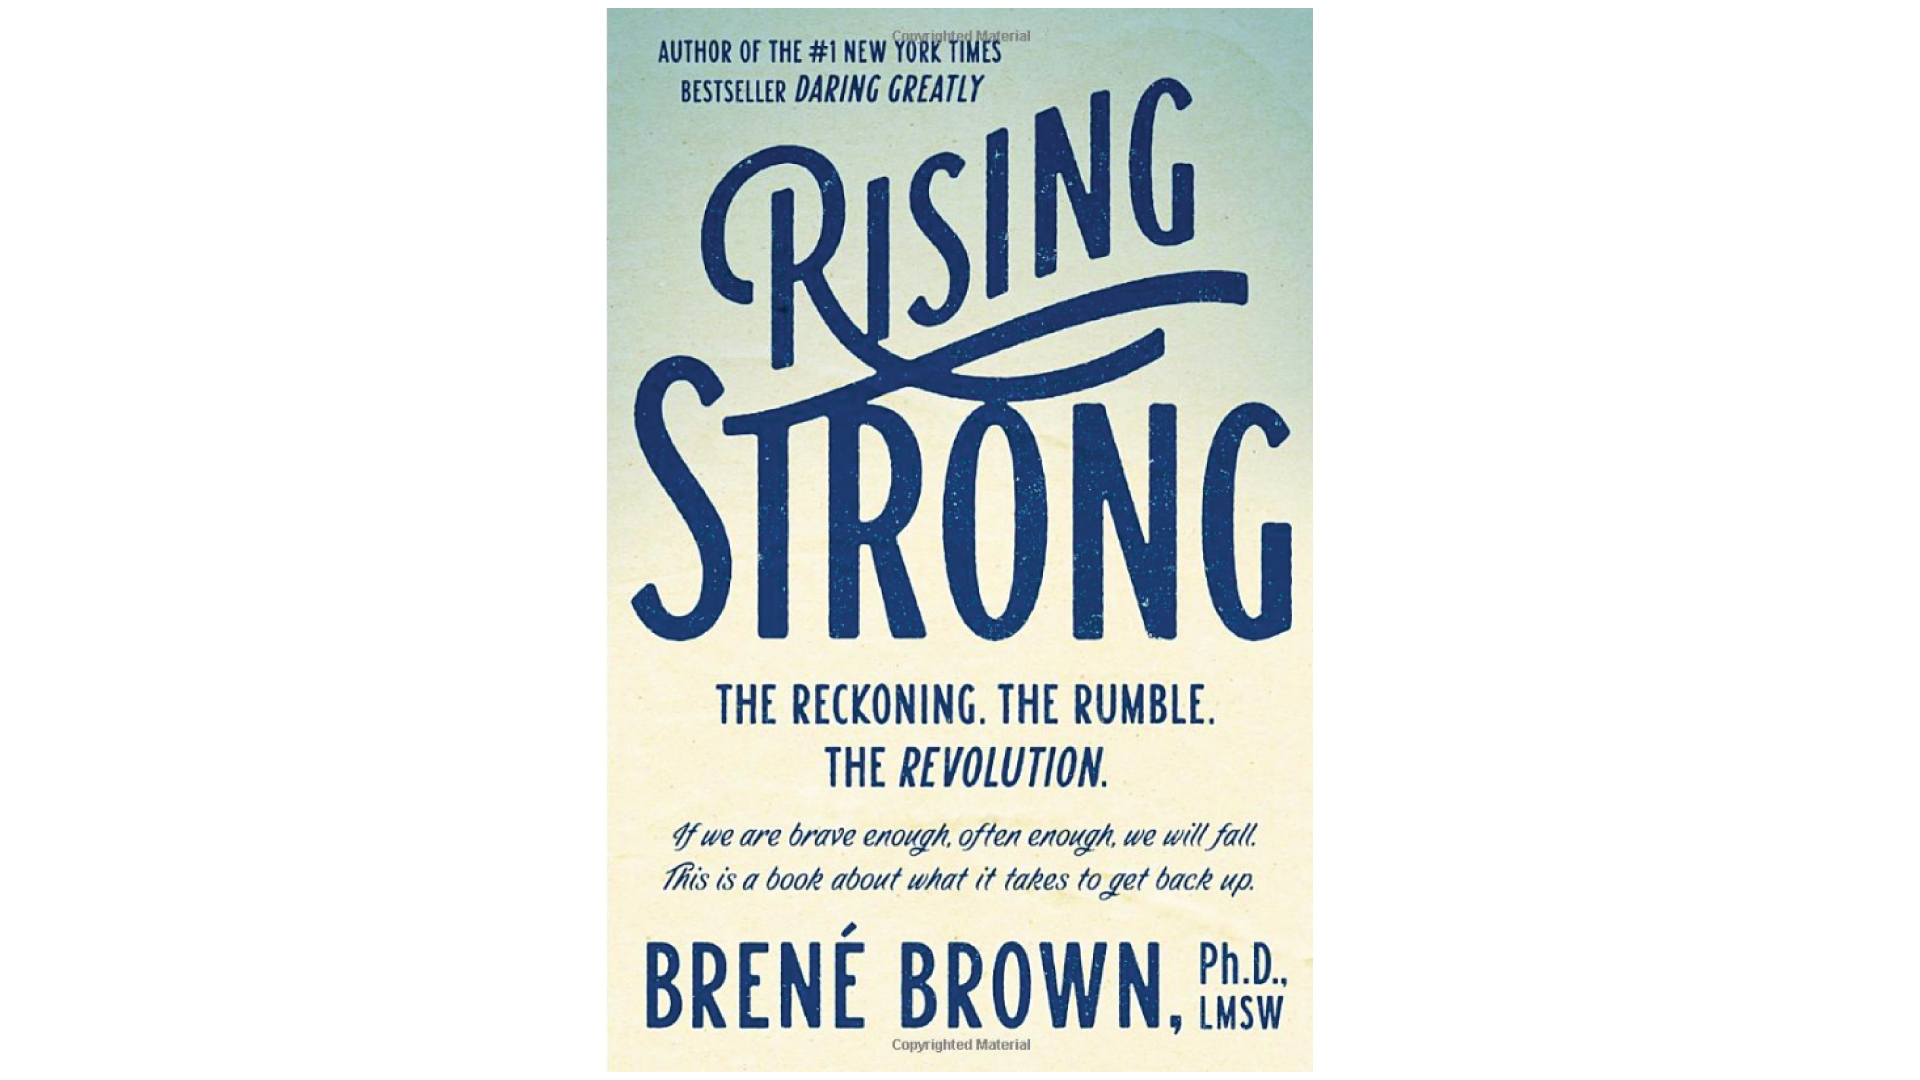 Брене Браун книги. Daring greatly. Браун Брене "стать сильнее.". Brown Brene "Rising strong".